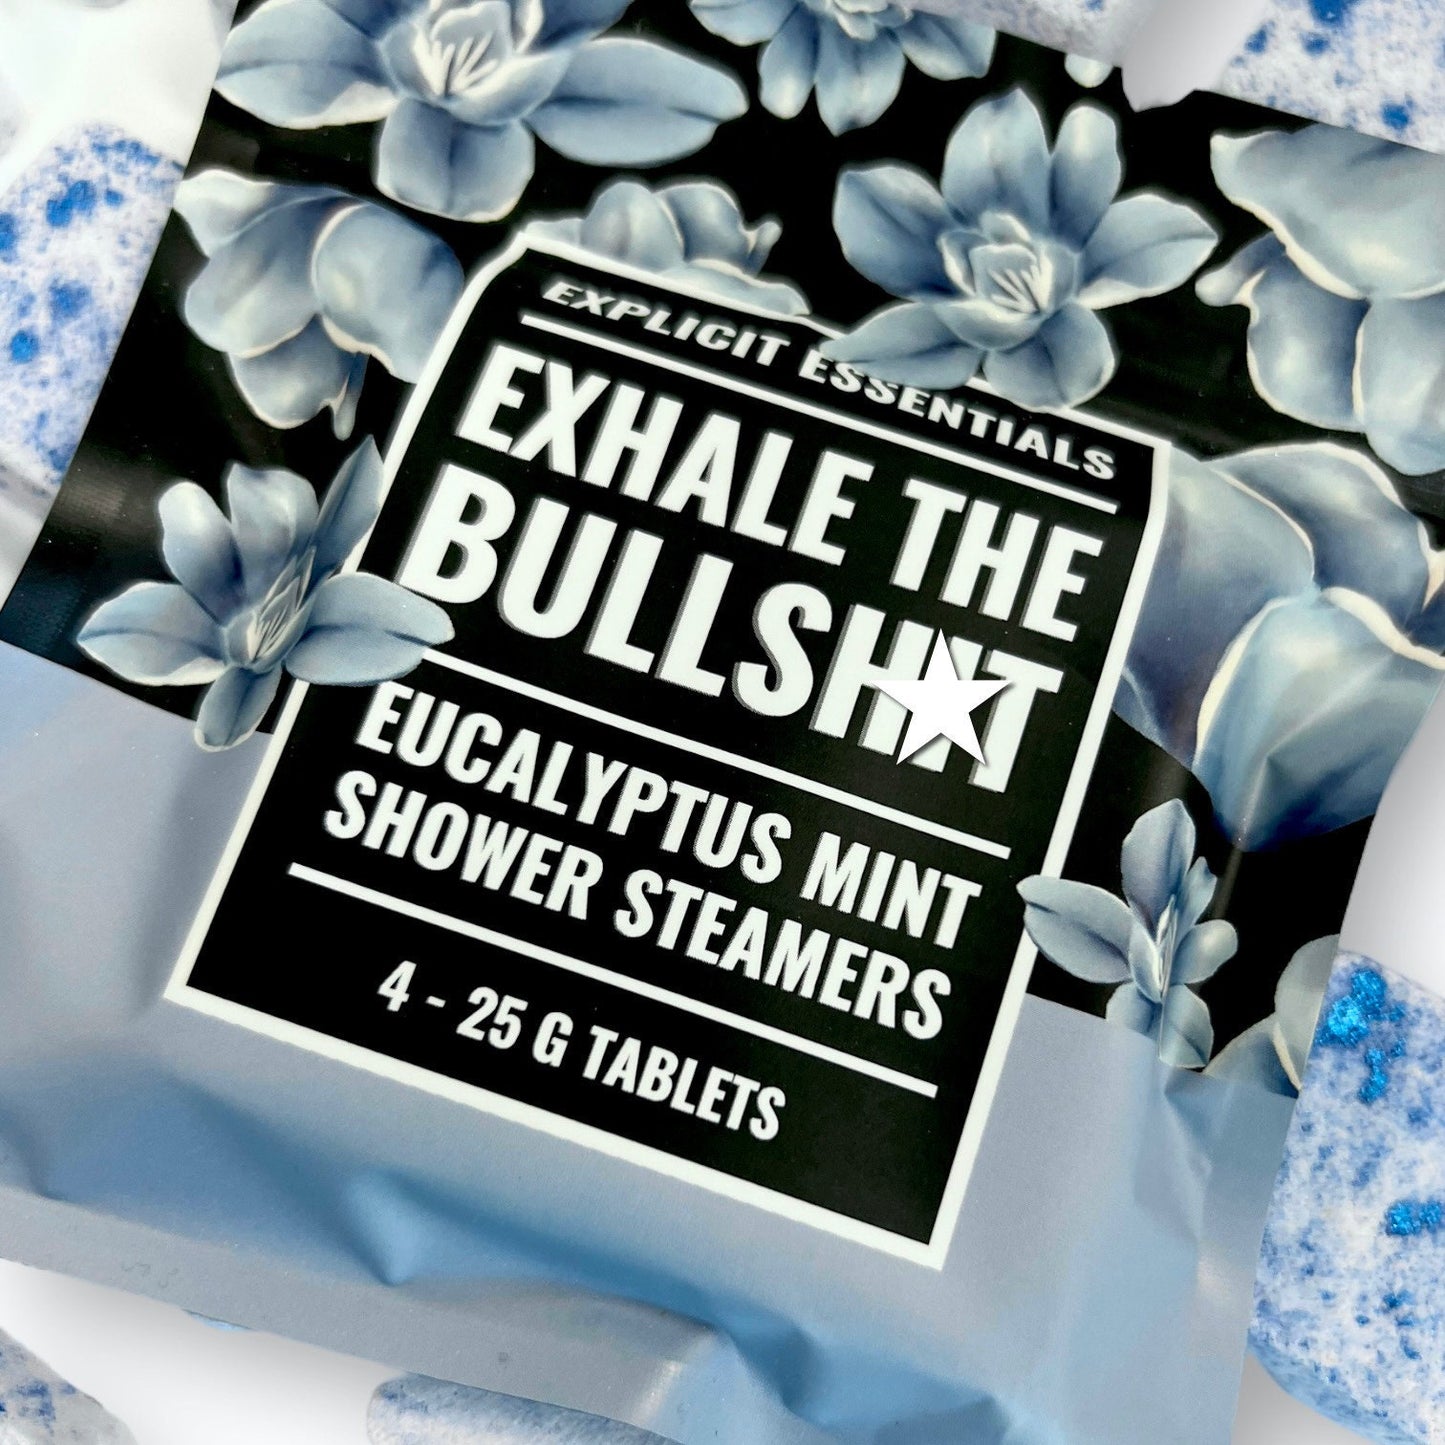 Exhale The Bullshit Shower Steamers